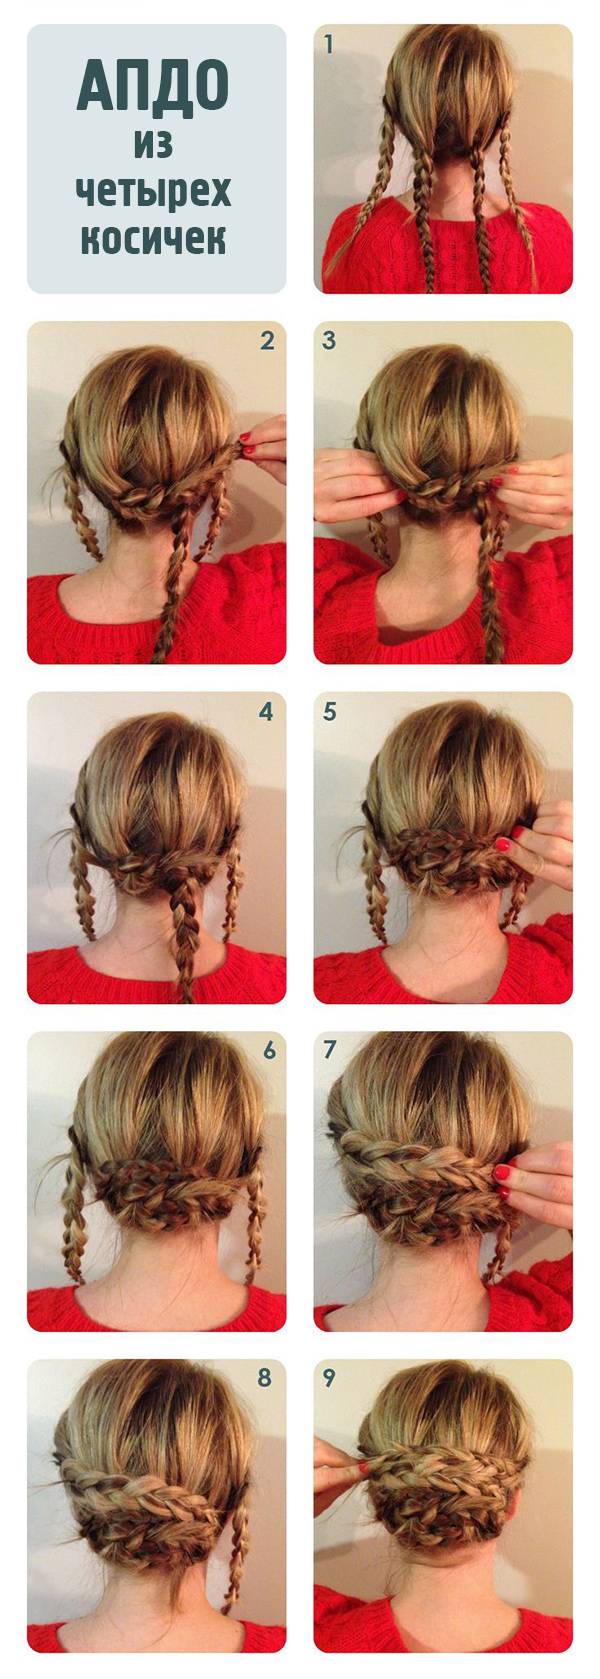 JamAdvice_com_ua_weaving-of-braids-step-by-step-5